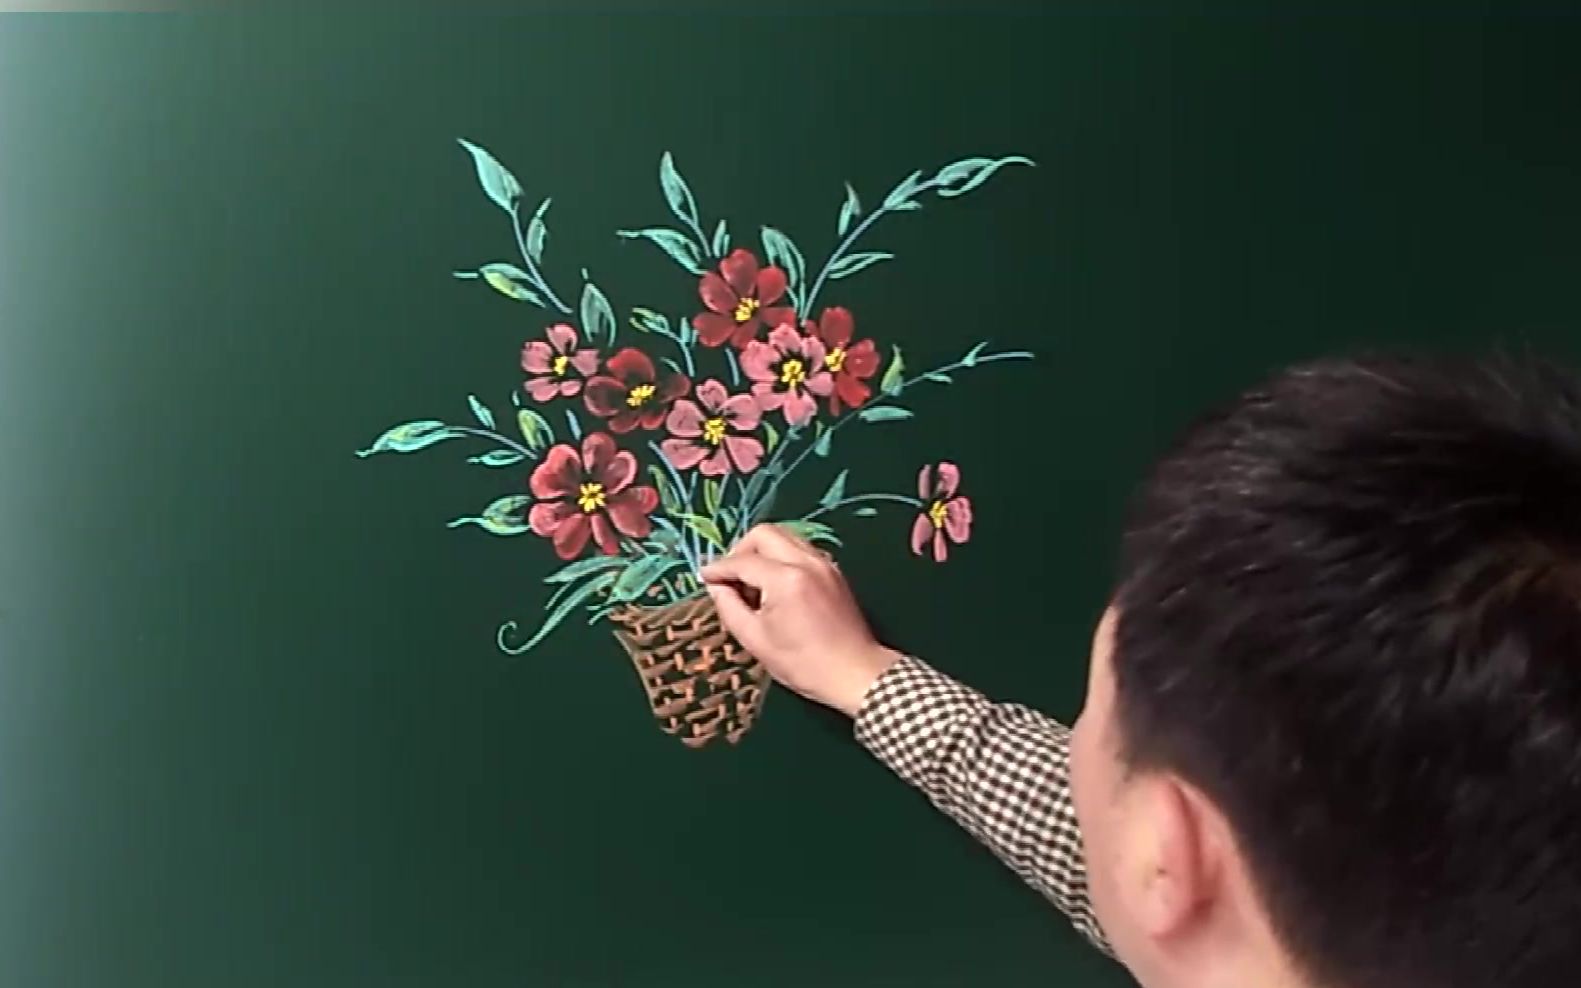 粉笔画，制作父亲节主题粉笔画教程 - 效果教程 - PS教程自学网